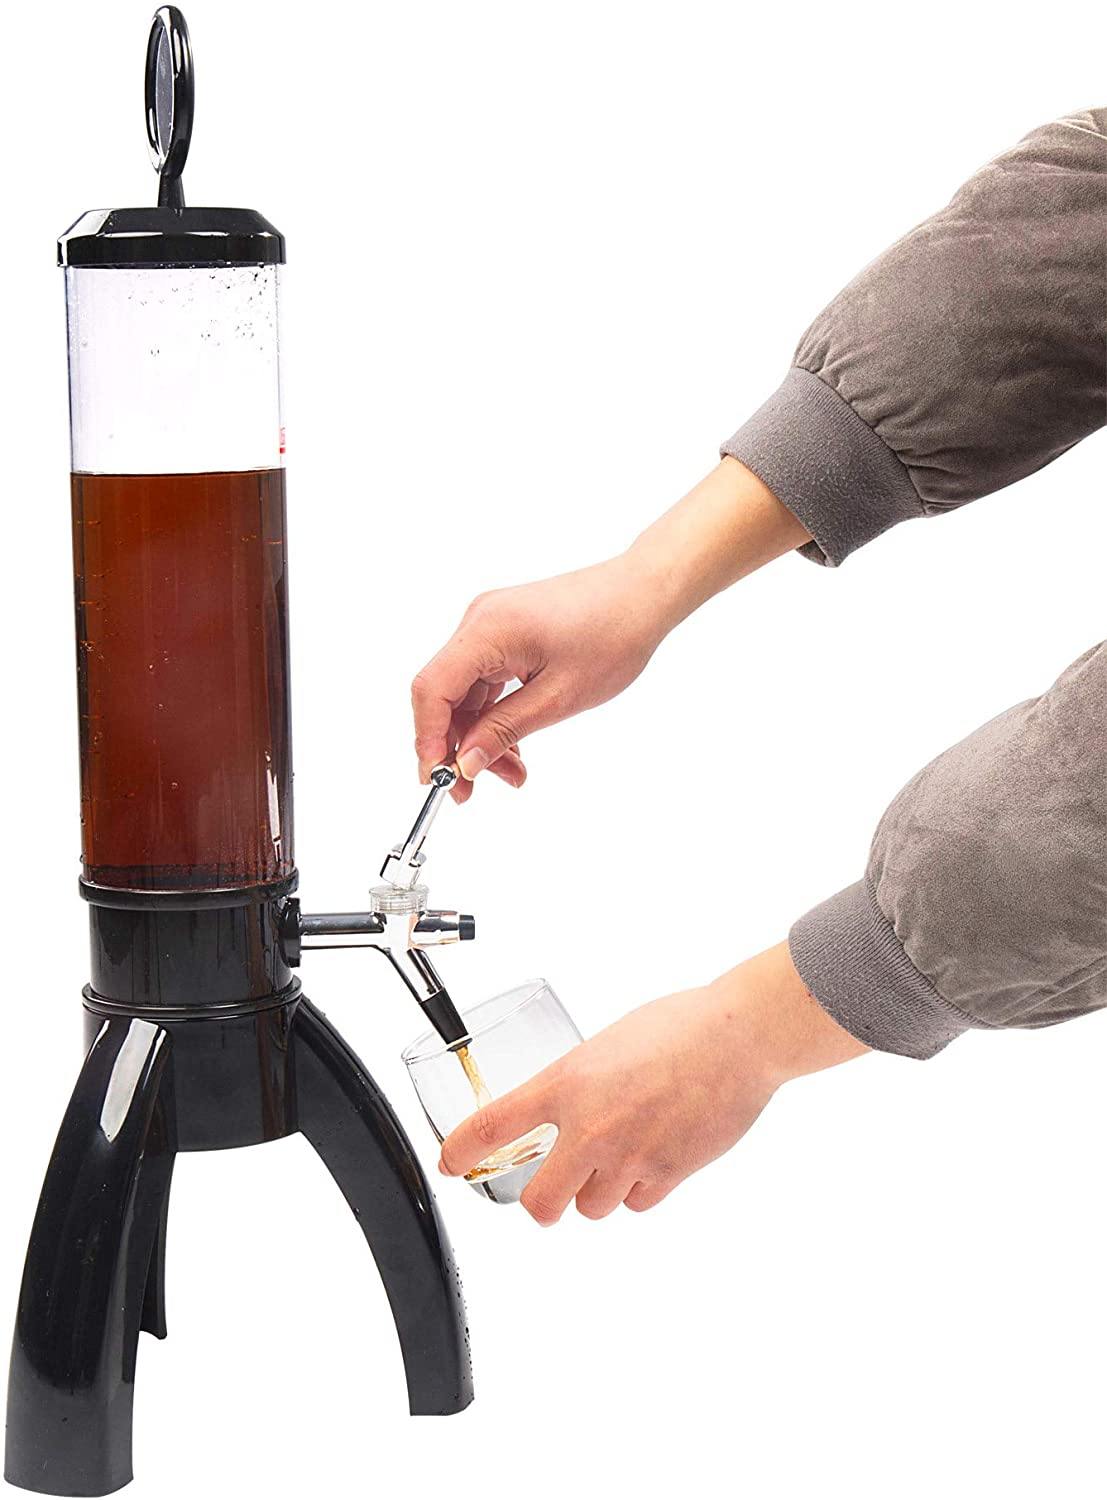 1.5L Draft Beverages Beer Tower Beverage Dispenser with Label for Beer and Drink - Bosonshop